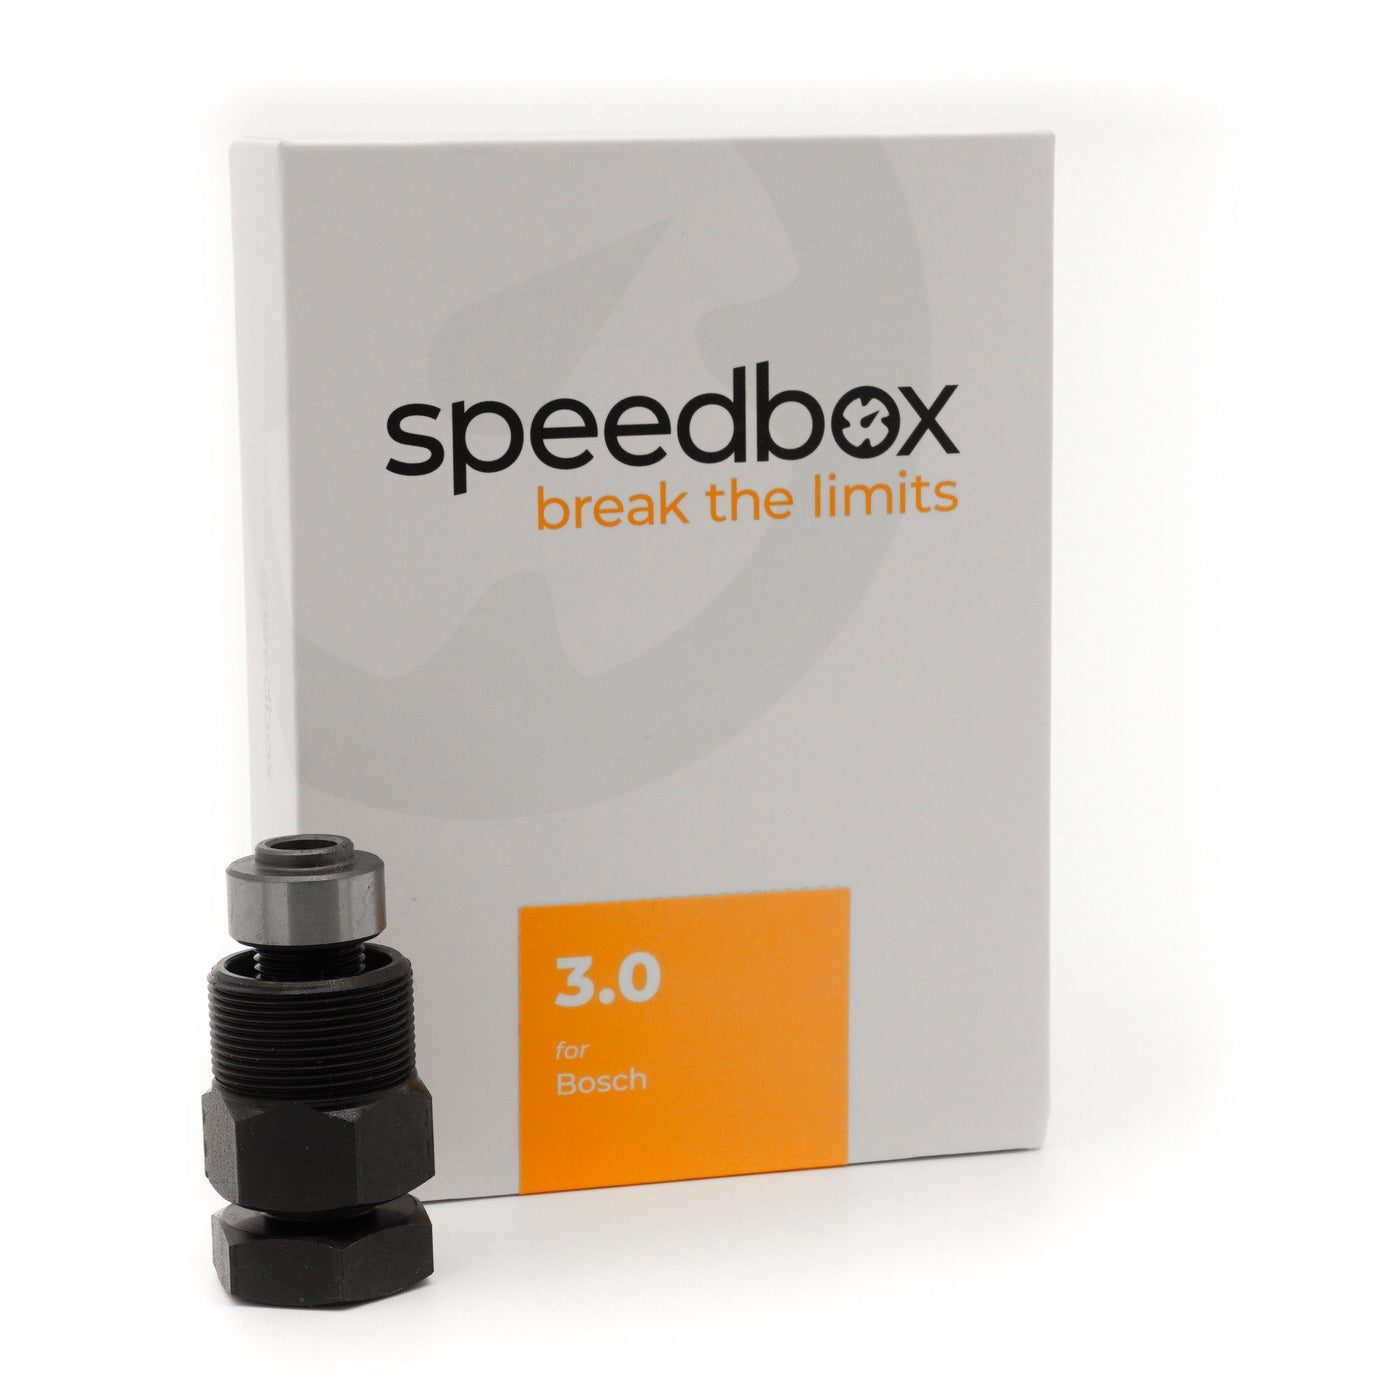 🔥 E-Bike Tuning: SpeedBox 3.0 für Bosch Motoren (Pedelec